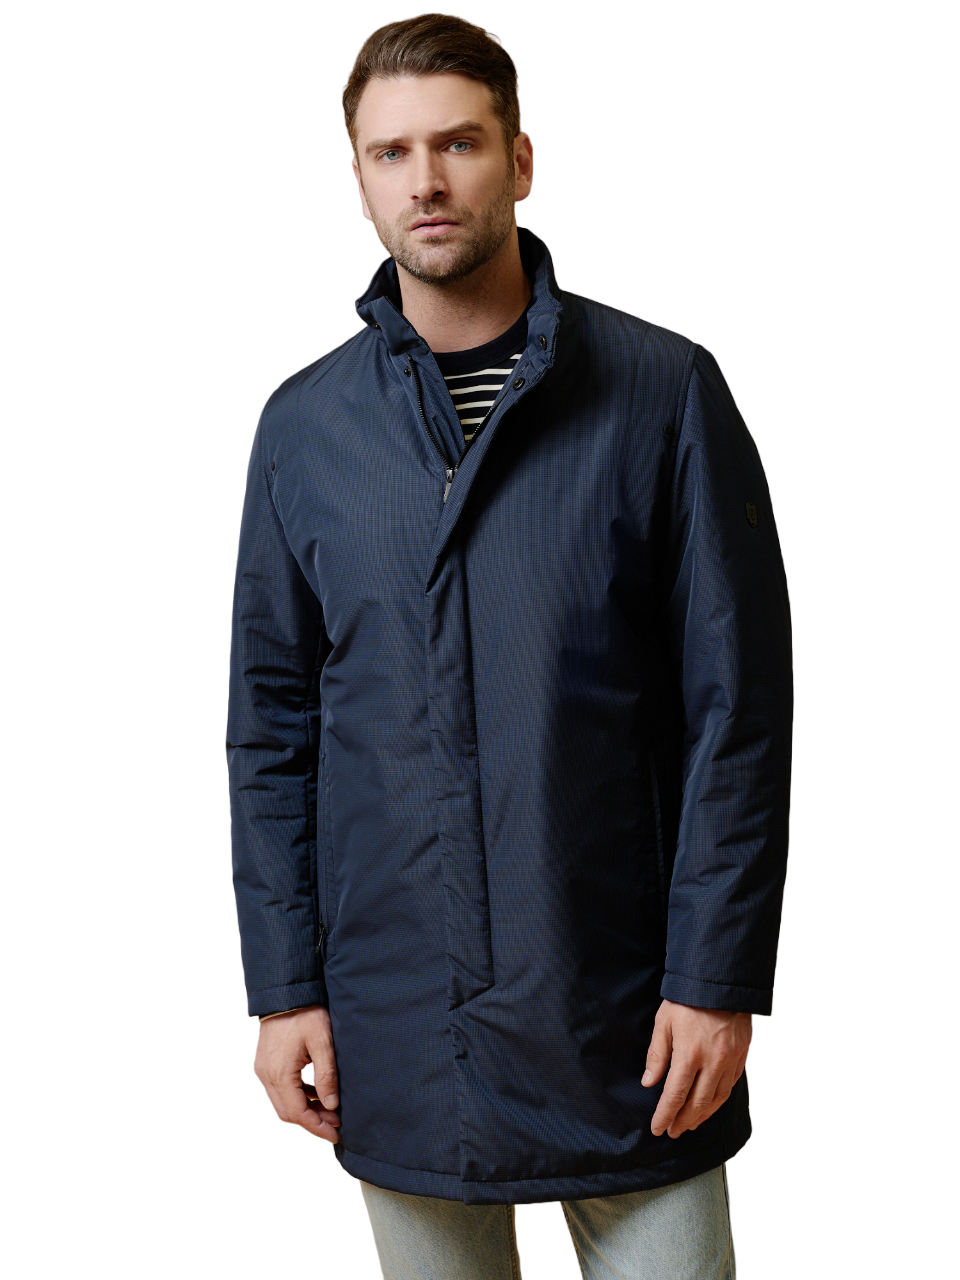 Куртка-плащ Bazioni для мужчин, утеплённый, 3015-2 M Grits Navy, р. 56-182, синий